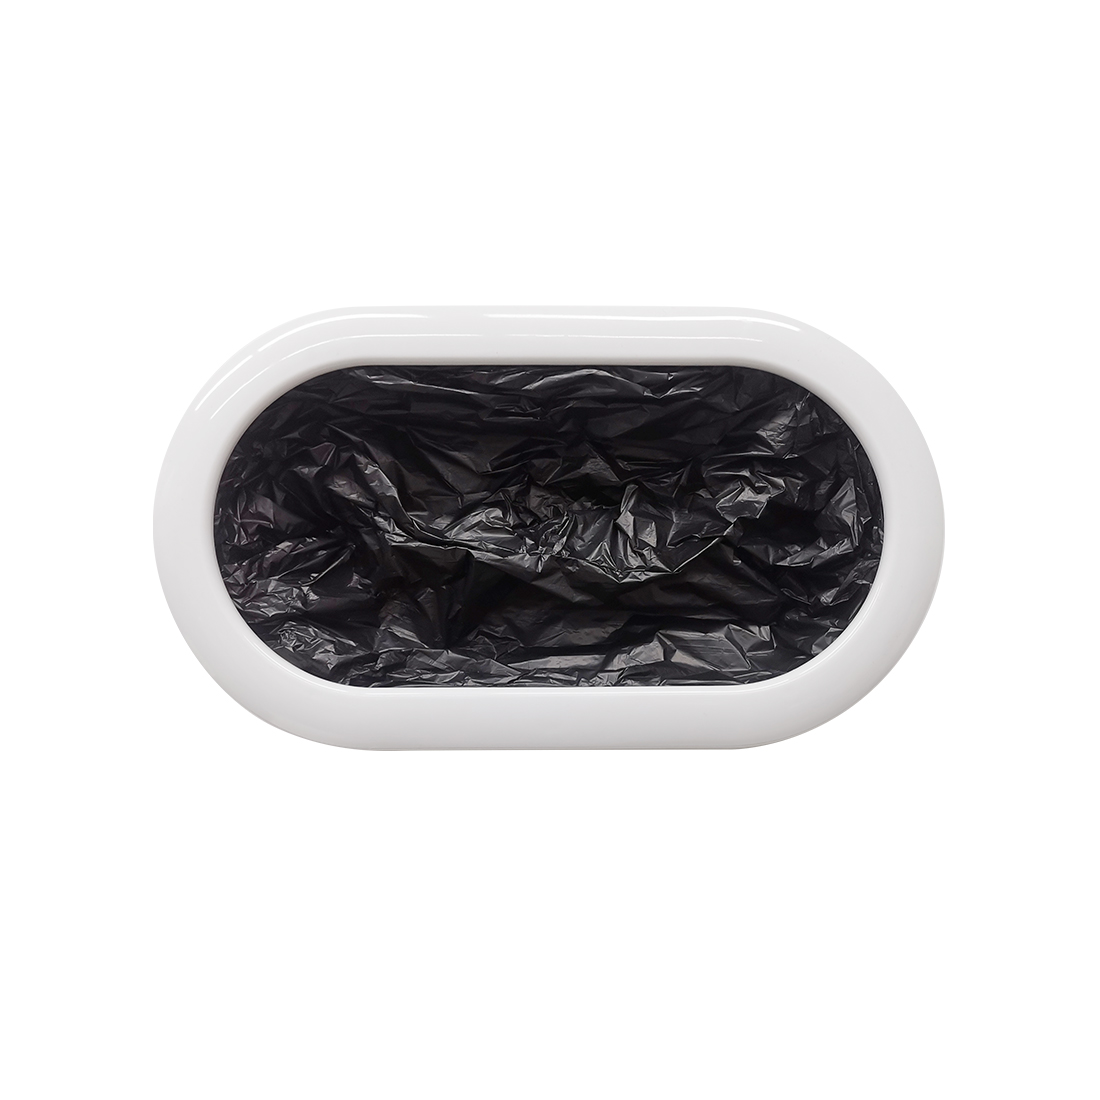 Сменные пакеты для умного мусорного ведра Townew Refill Ring R03 (120 шт. в упаковке) Черный